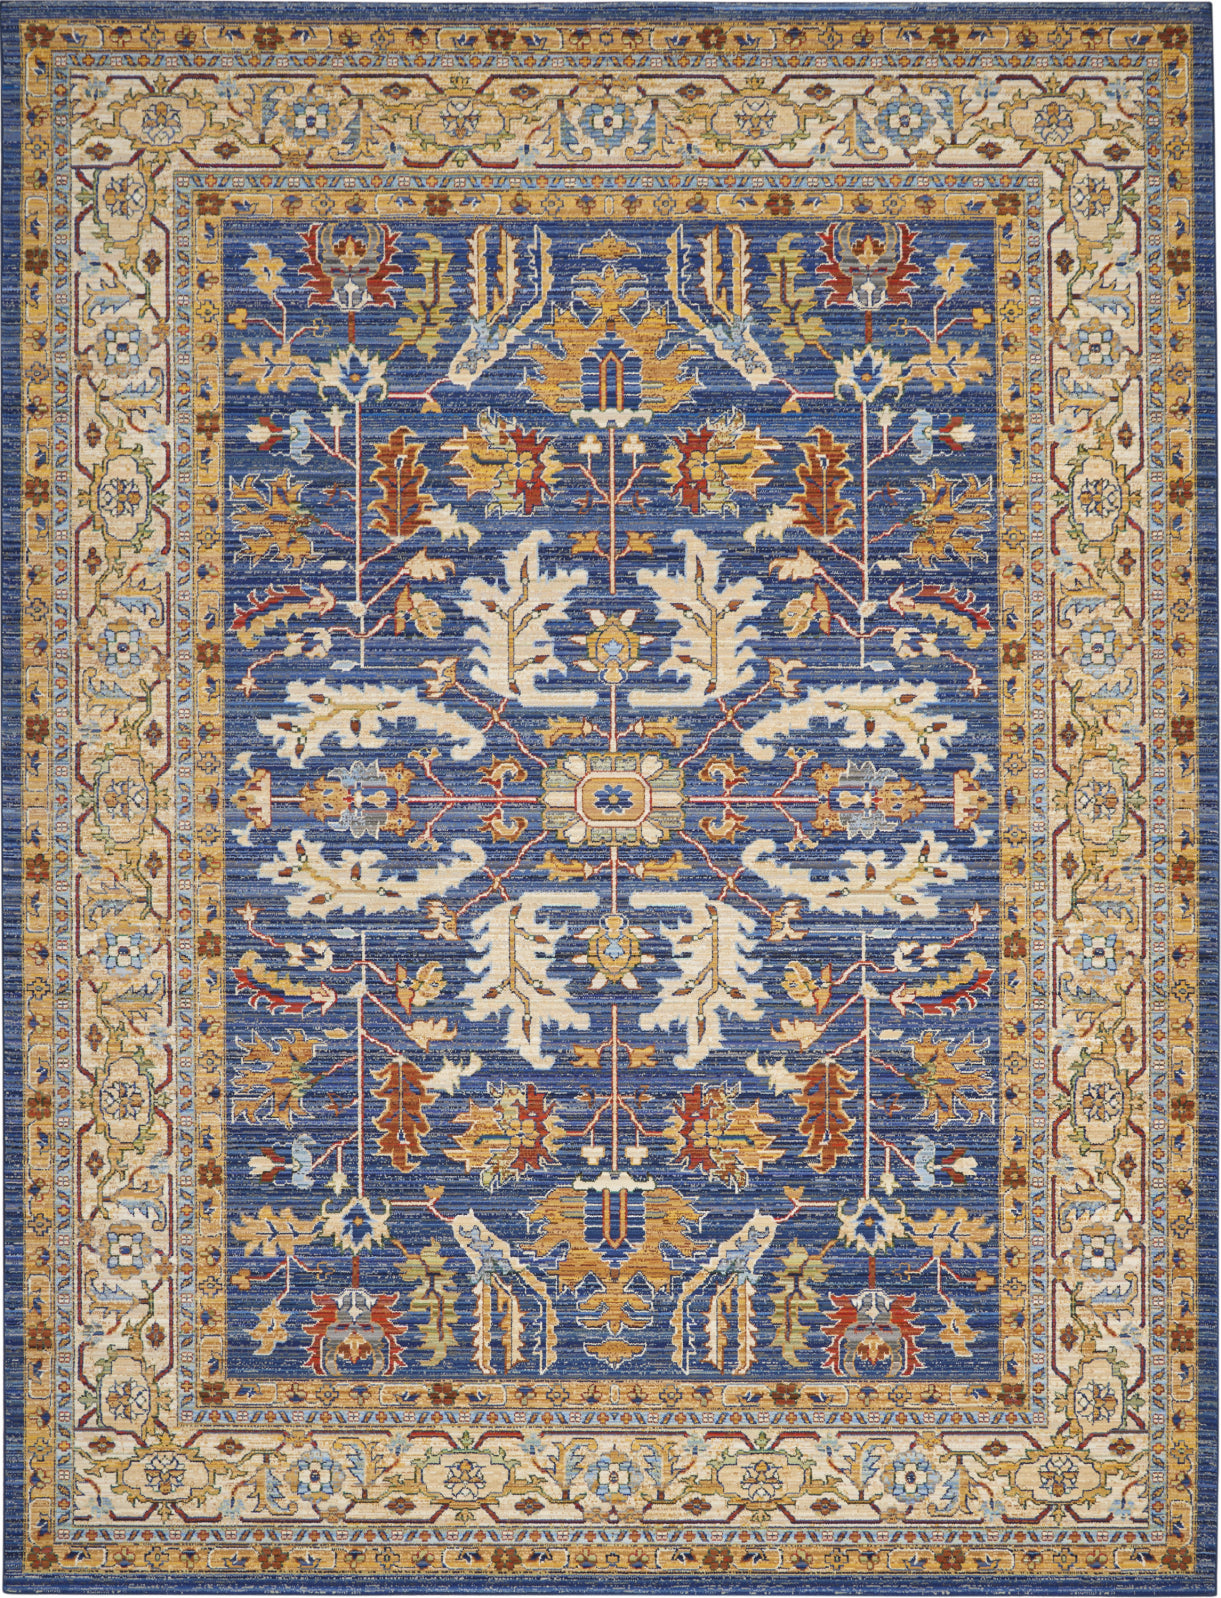 6X8 living room rugs blue denim braided rug